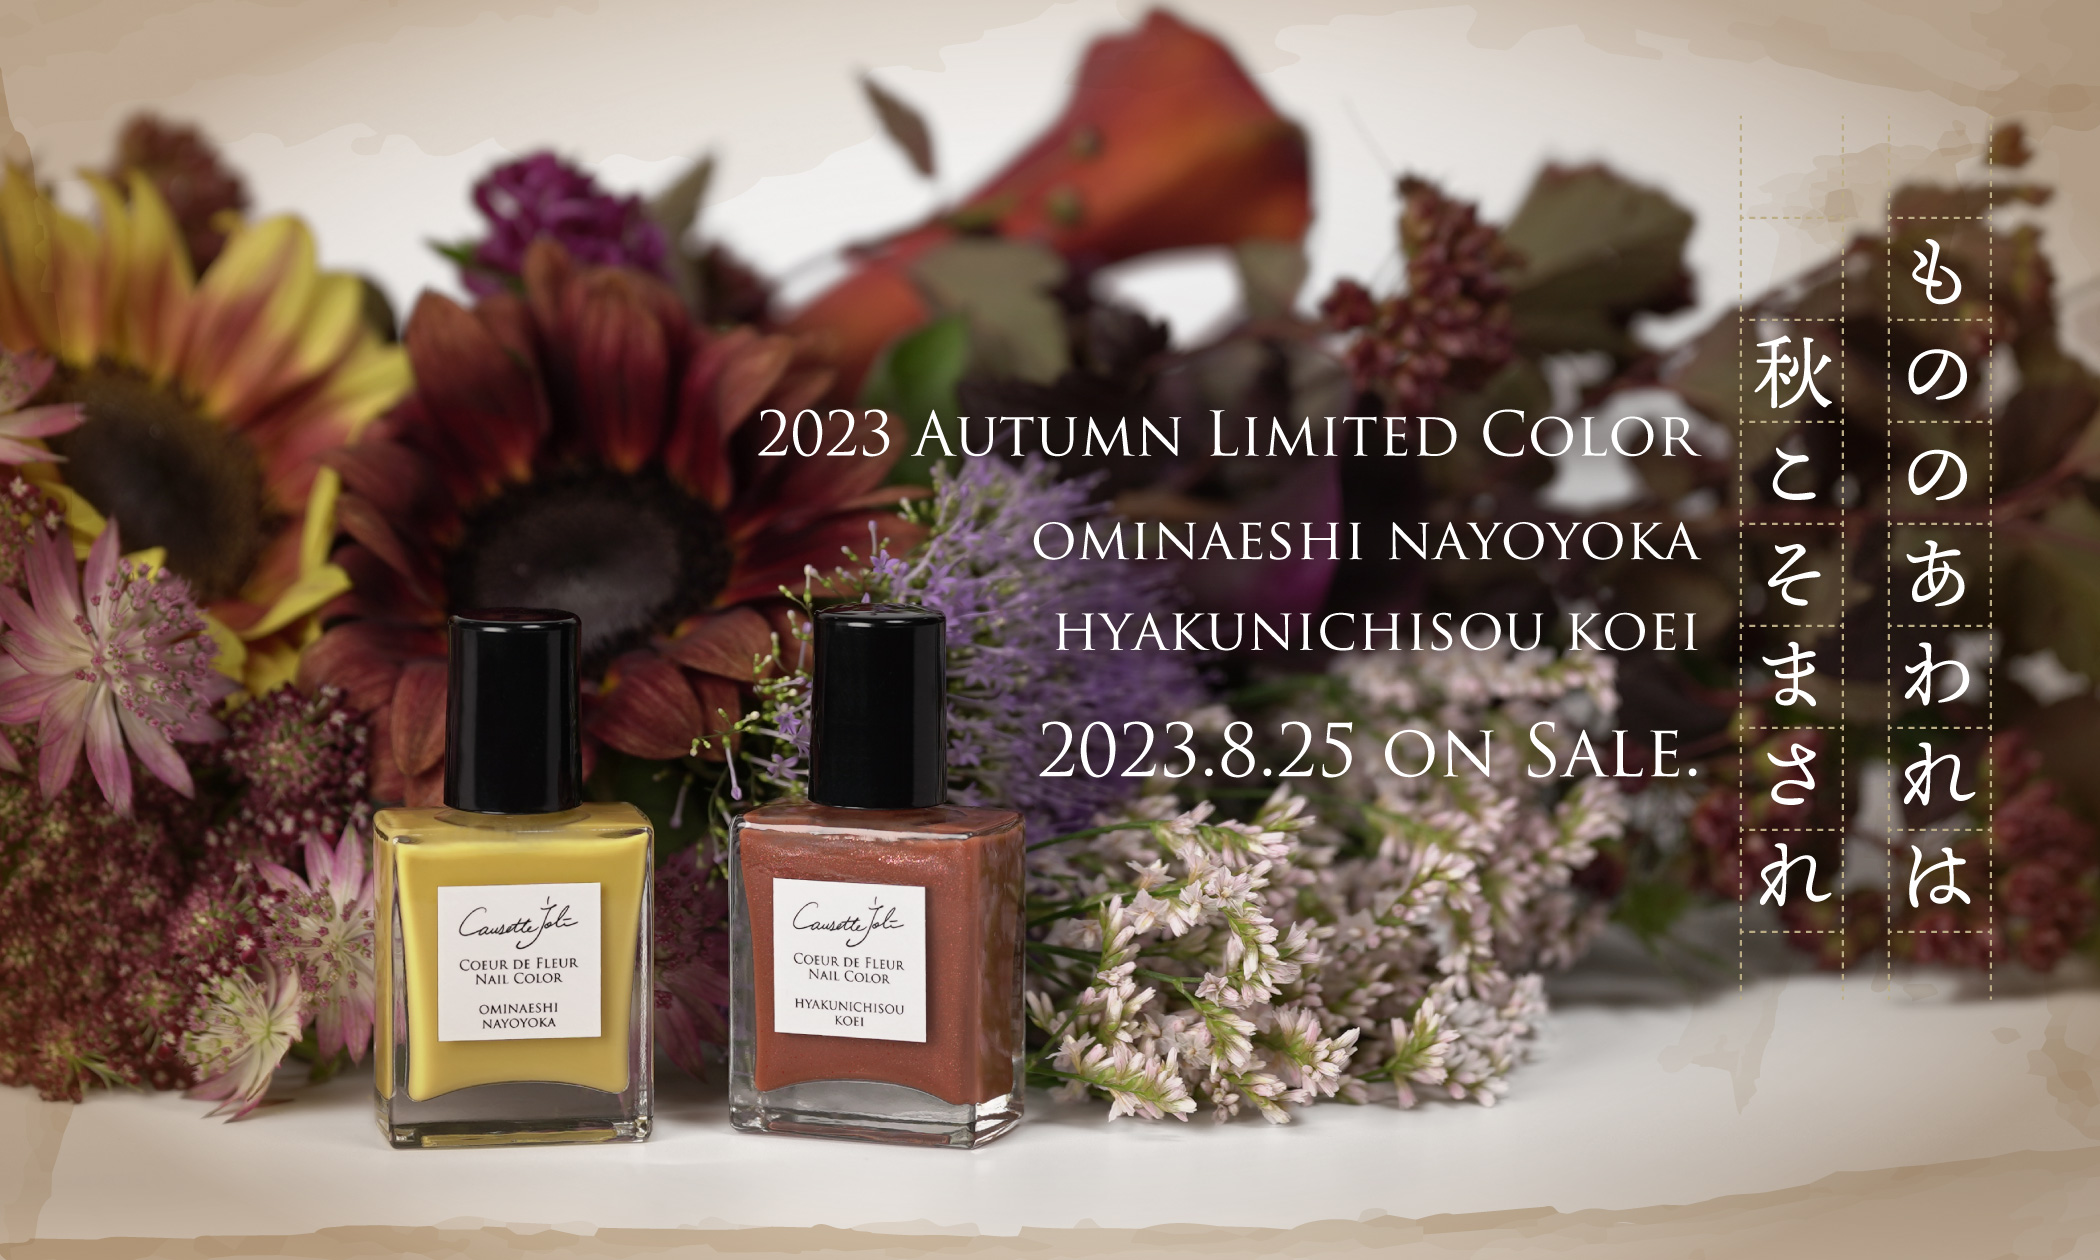 Causette.Joli Online Shop | 2023 Autumn Limited Color